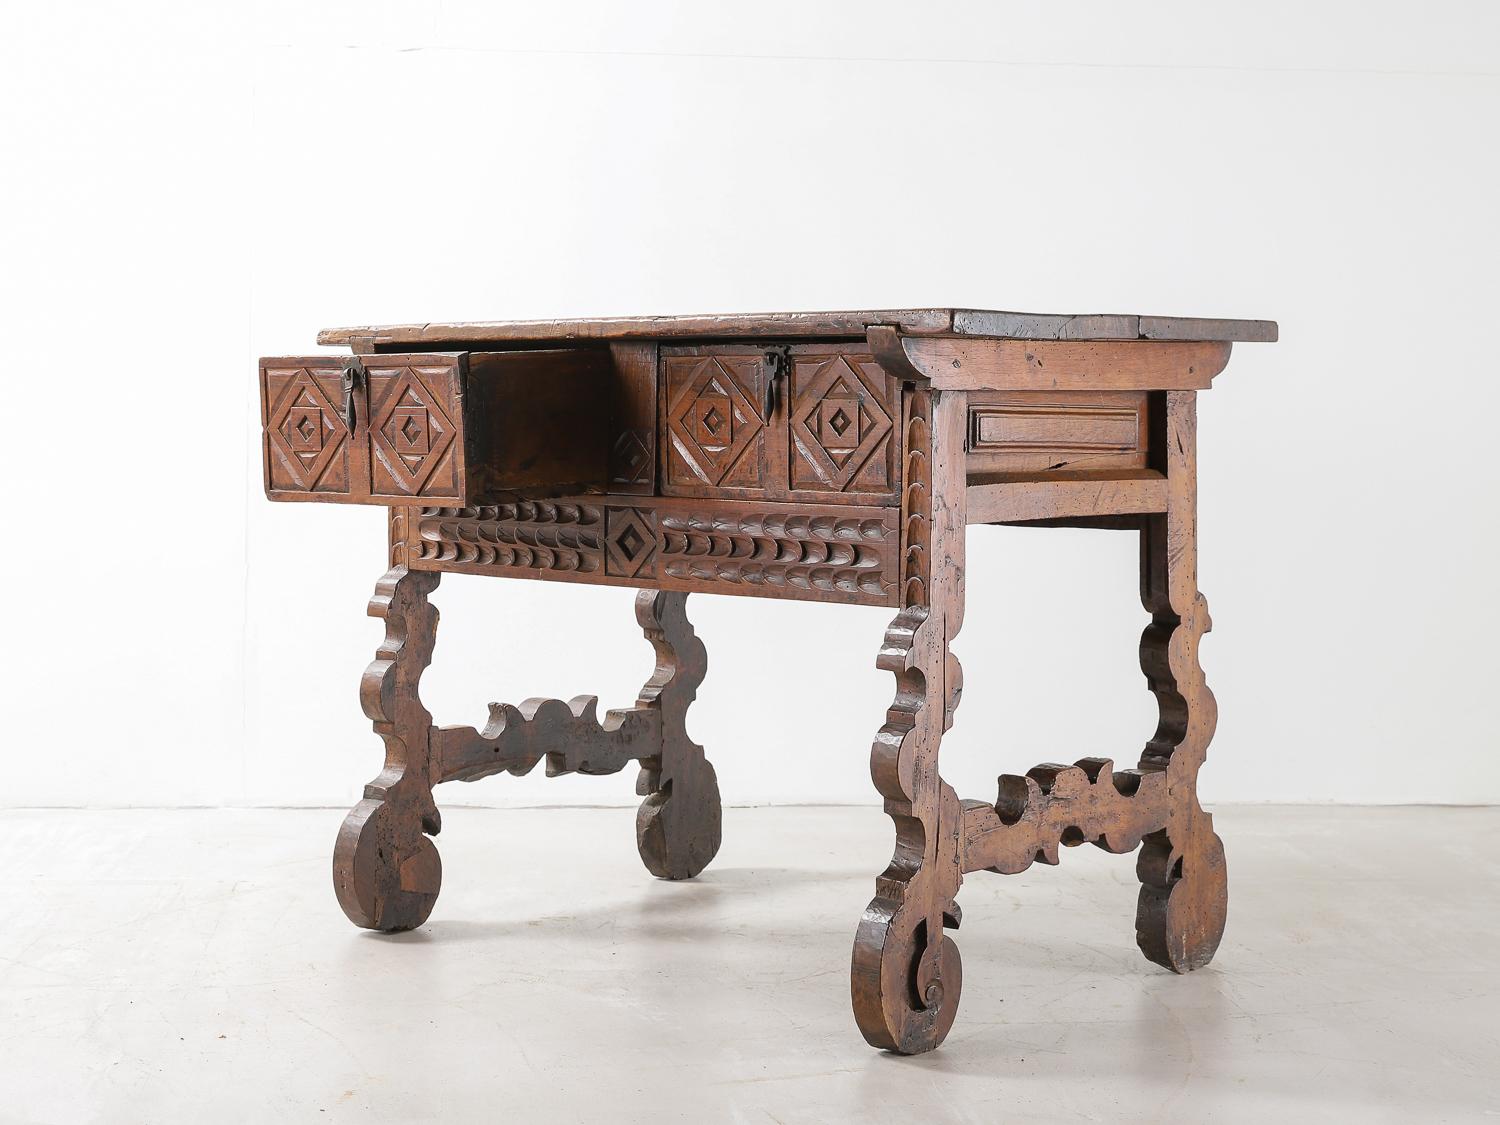 Table espagnole du XVIIIe siècle en noyer avec une frise décorative originale sculptée avec des tiroirs doubles, des poignées originales en fer et de beaux pieds en lyre.